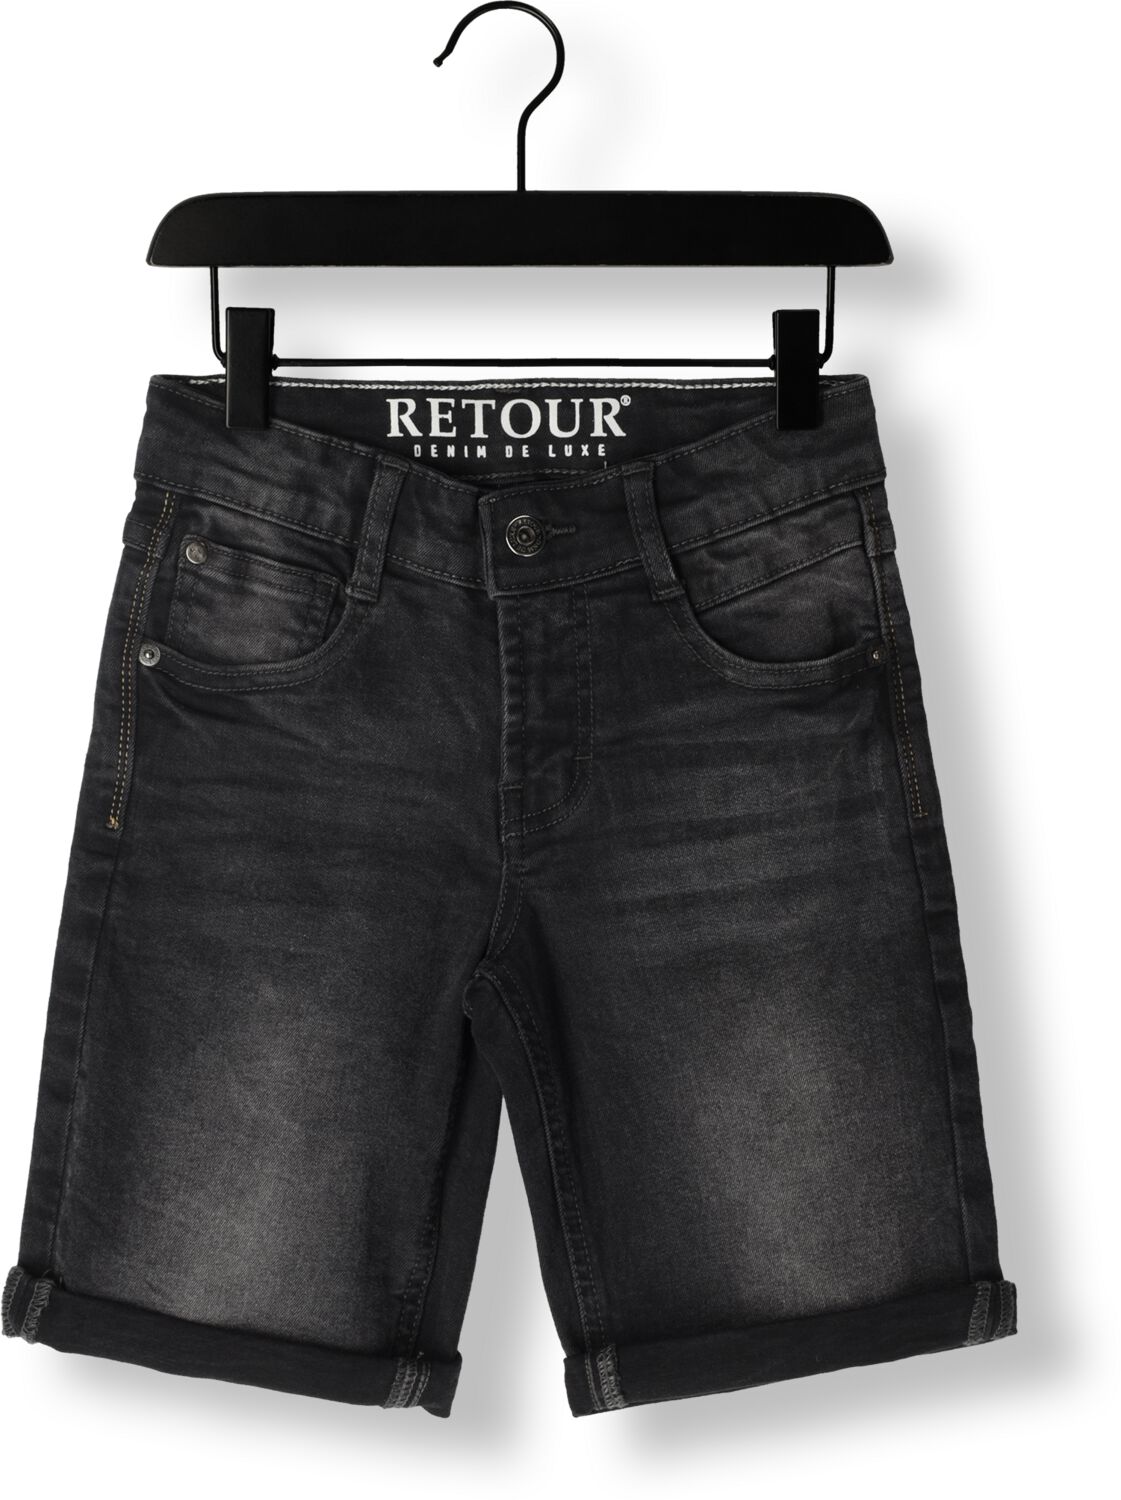 Retour Jeans denim short Reven industrial grey Korte broek Zwart Jongens Stretchdenim 170